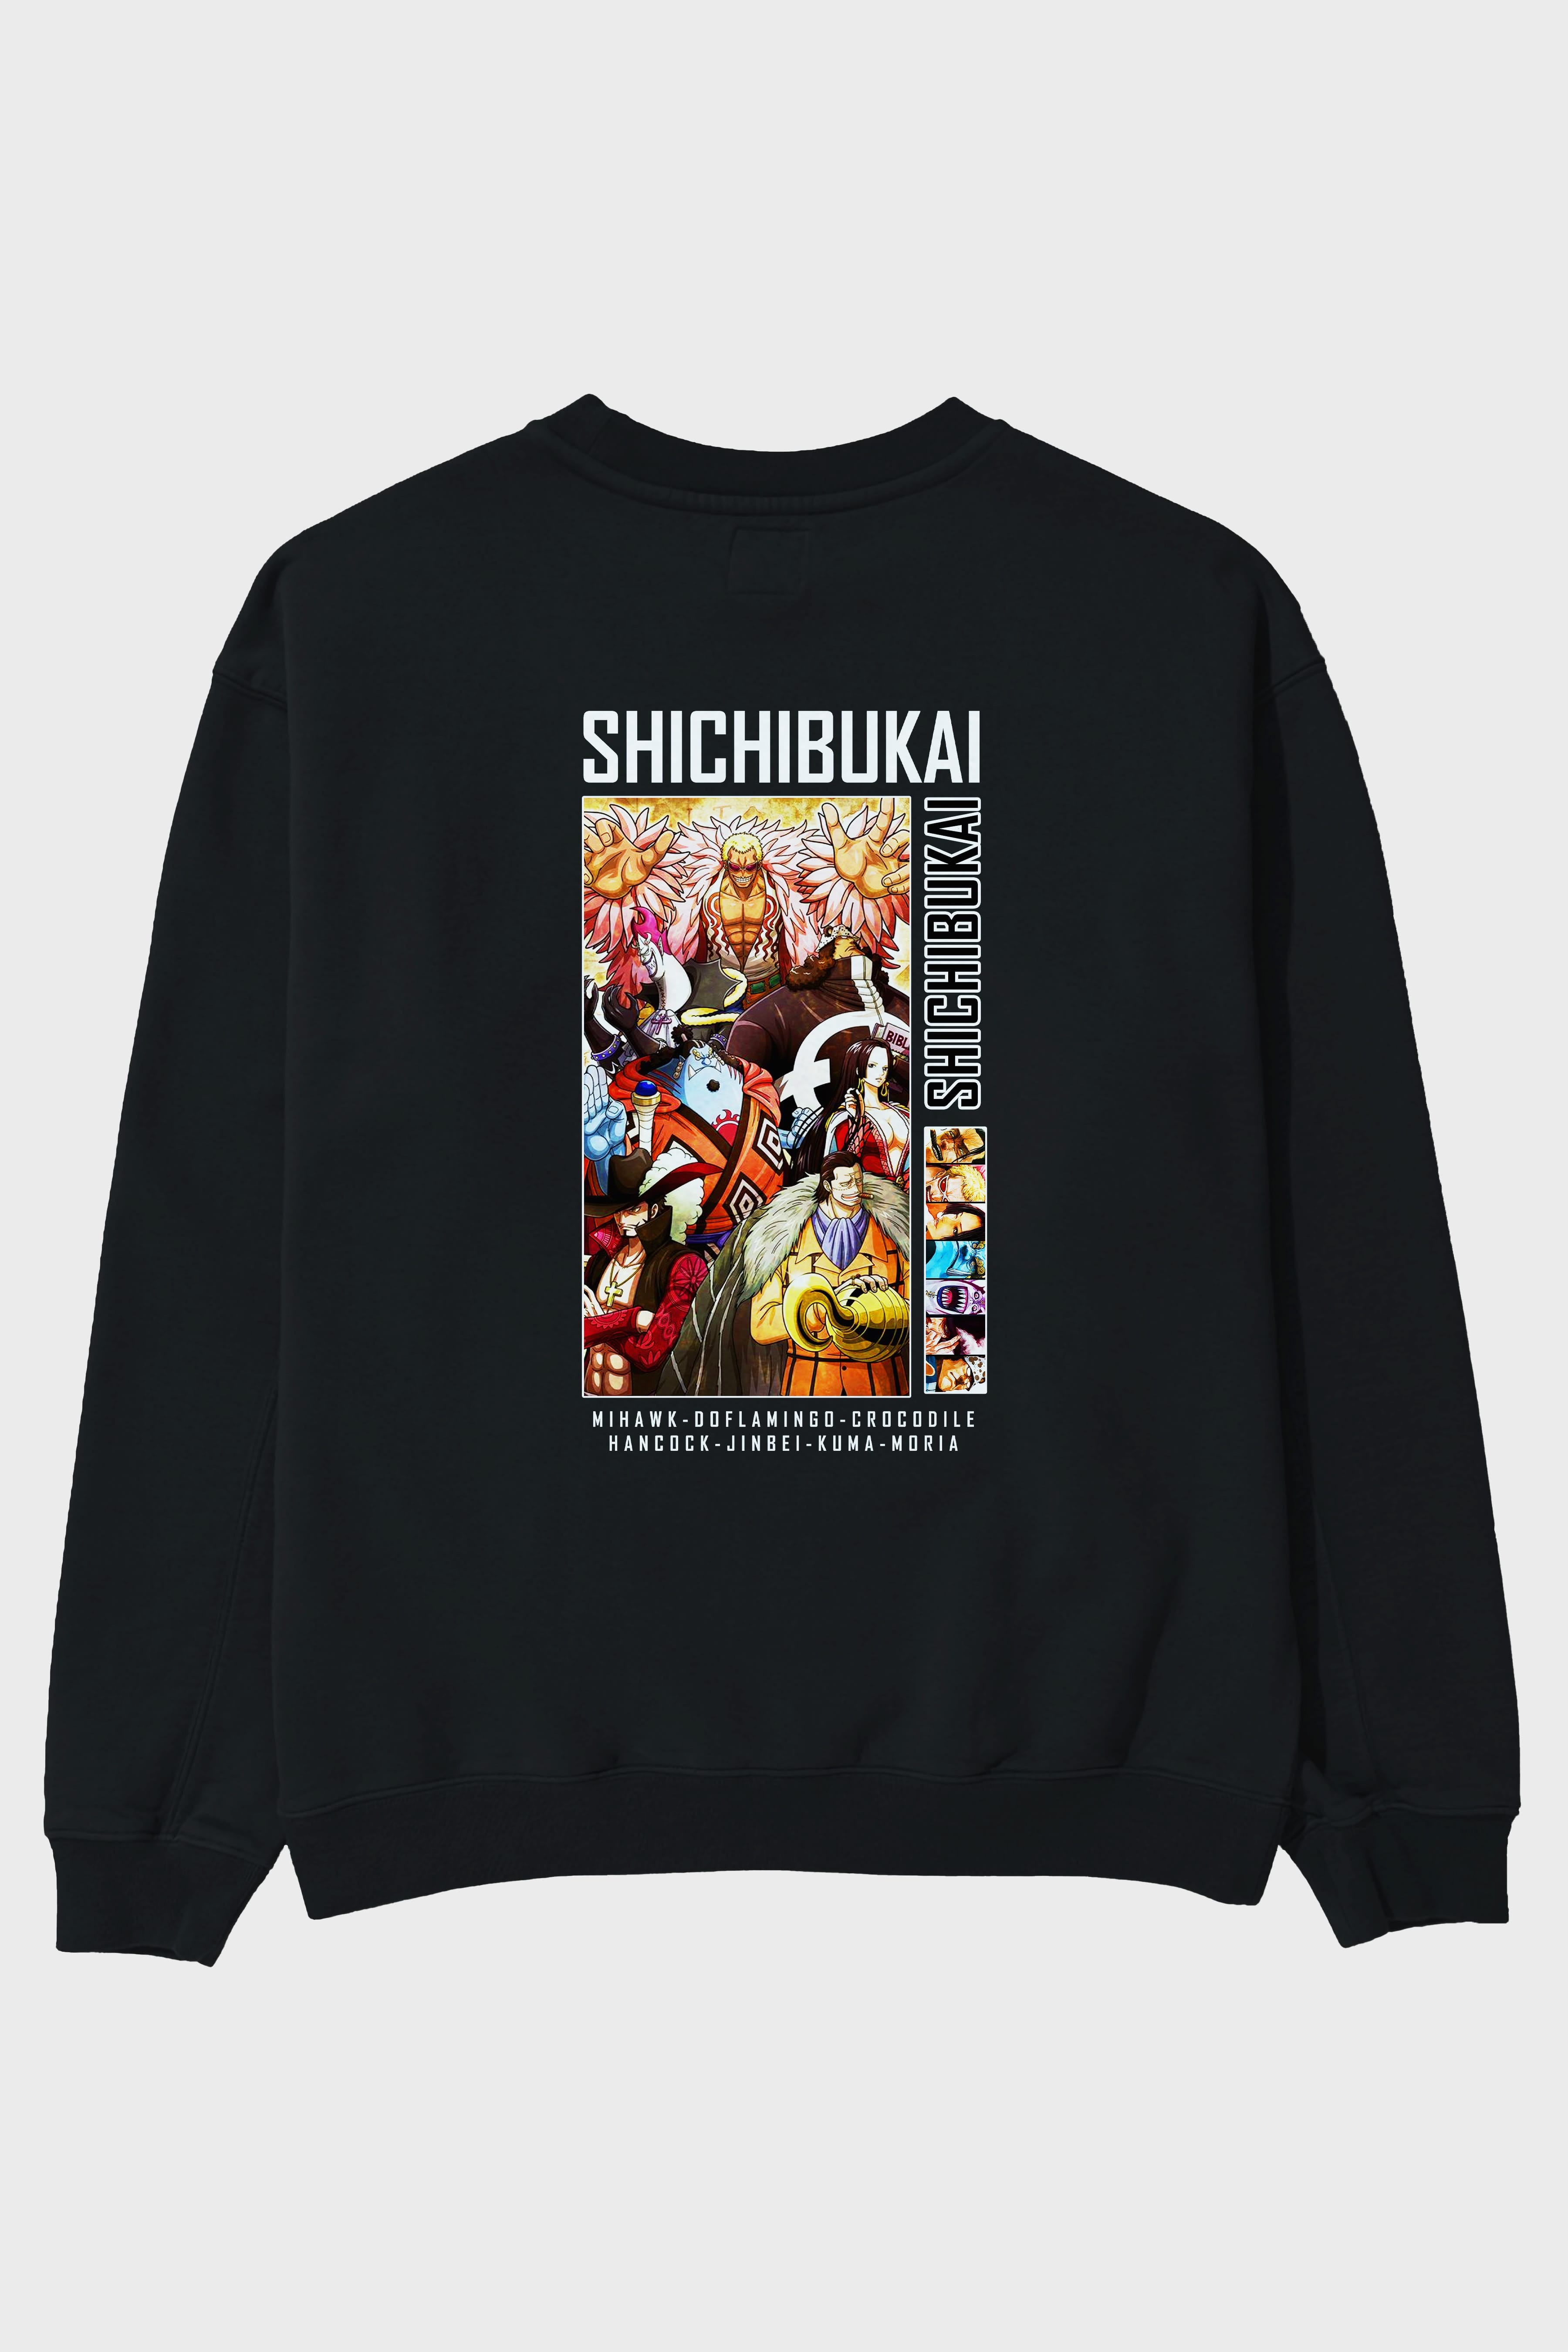 Shichibukai Arka Baskılı Anime Oversize Sweatshirt Erkek Kadın Unisex